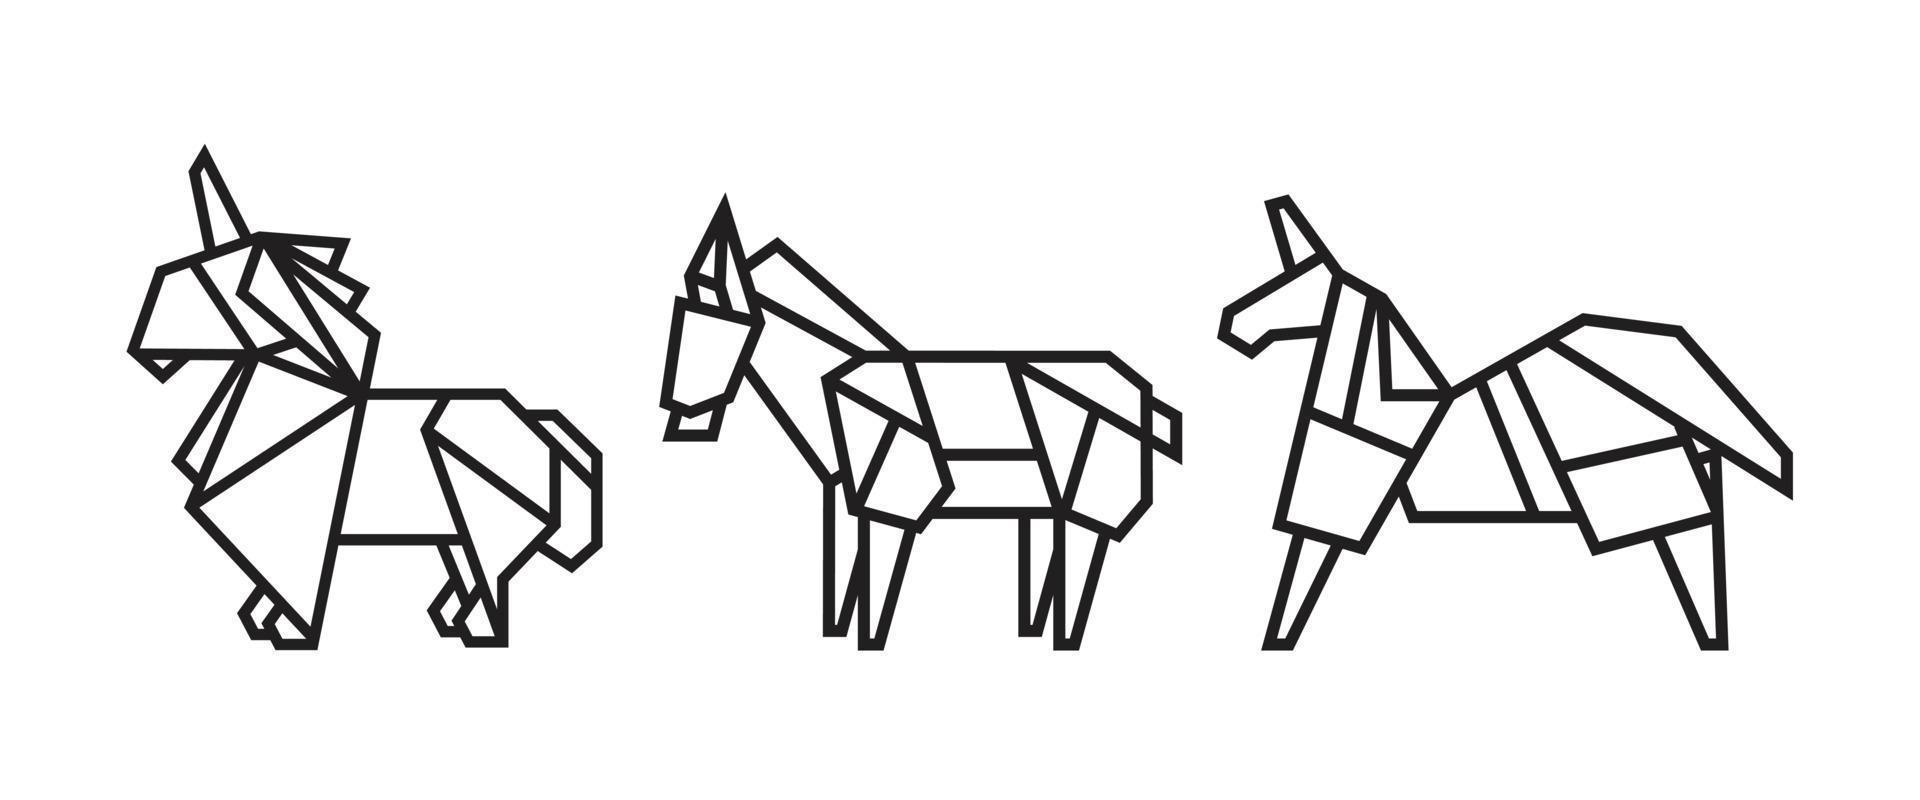 ilustraciones de caballos en estilo origami. vector